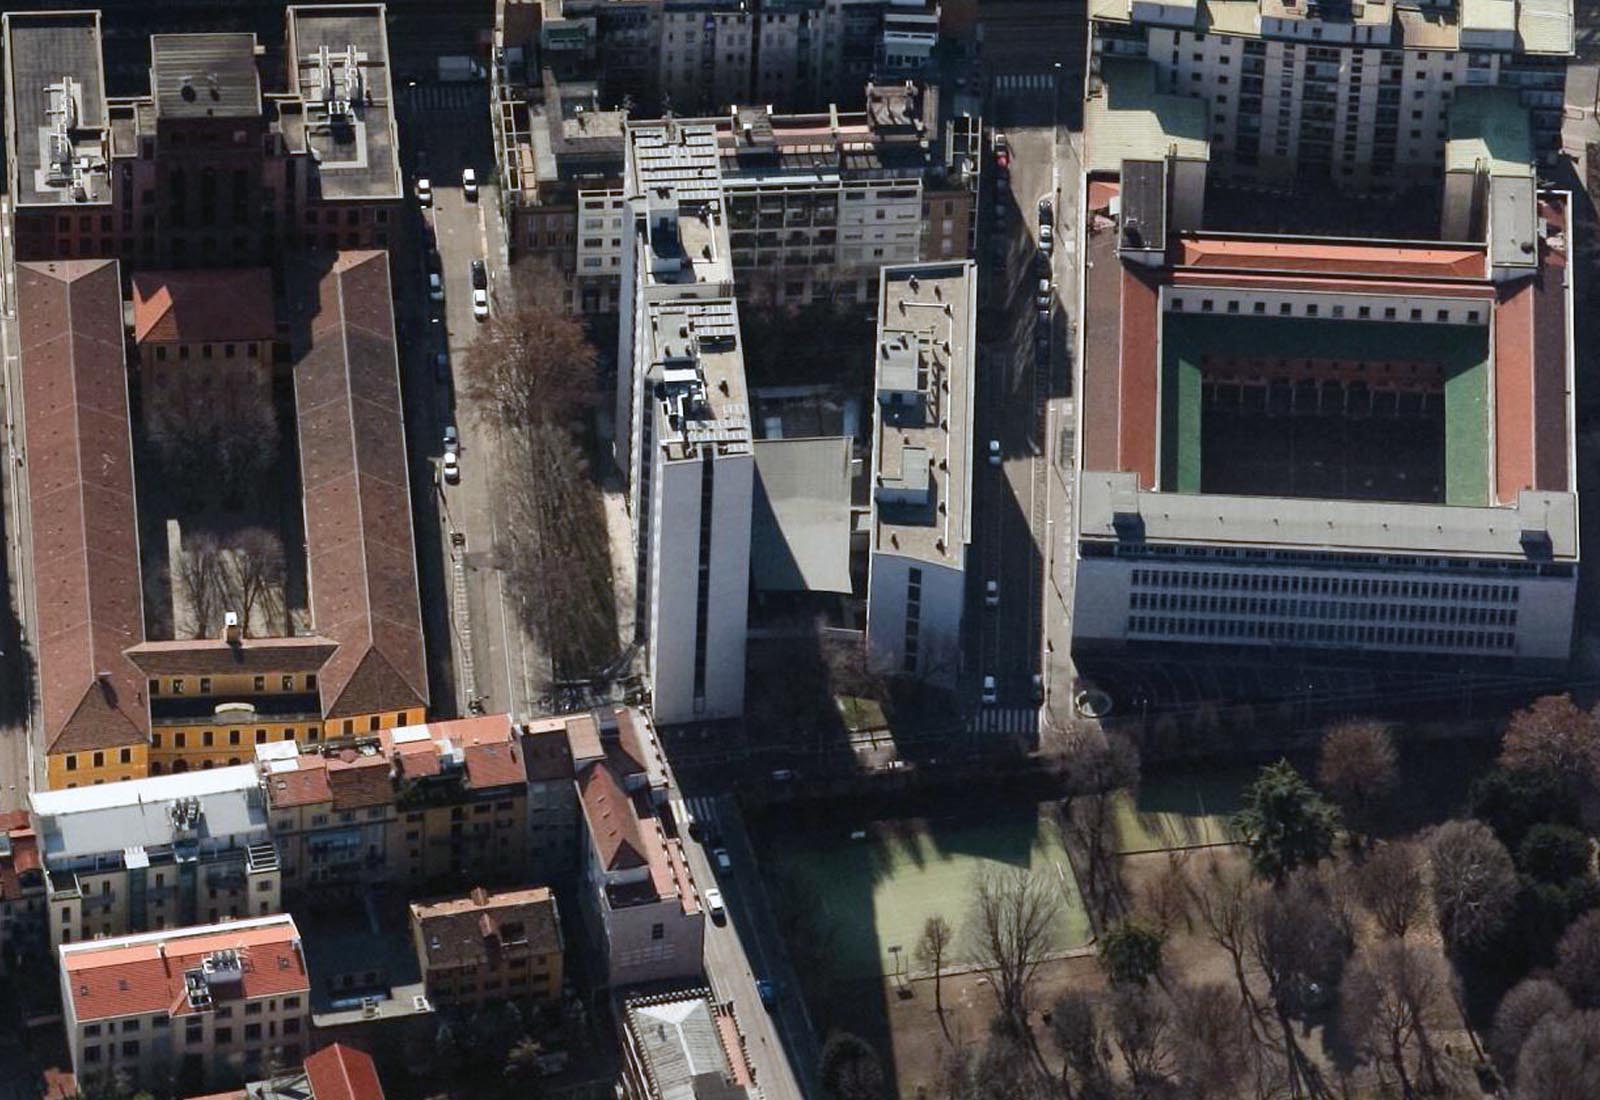 University residence in Corridoni street Milan - Aerial view